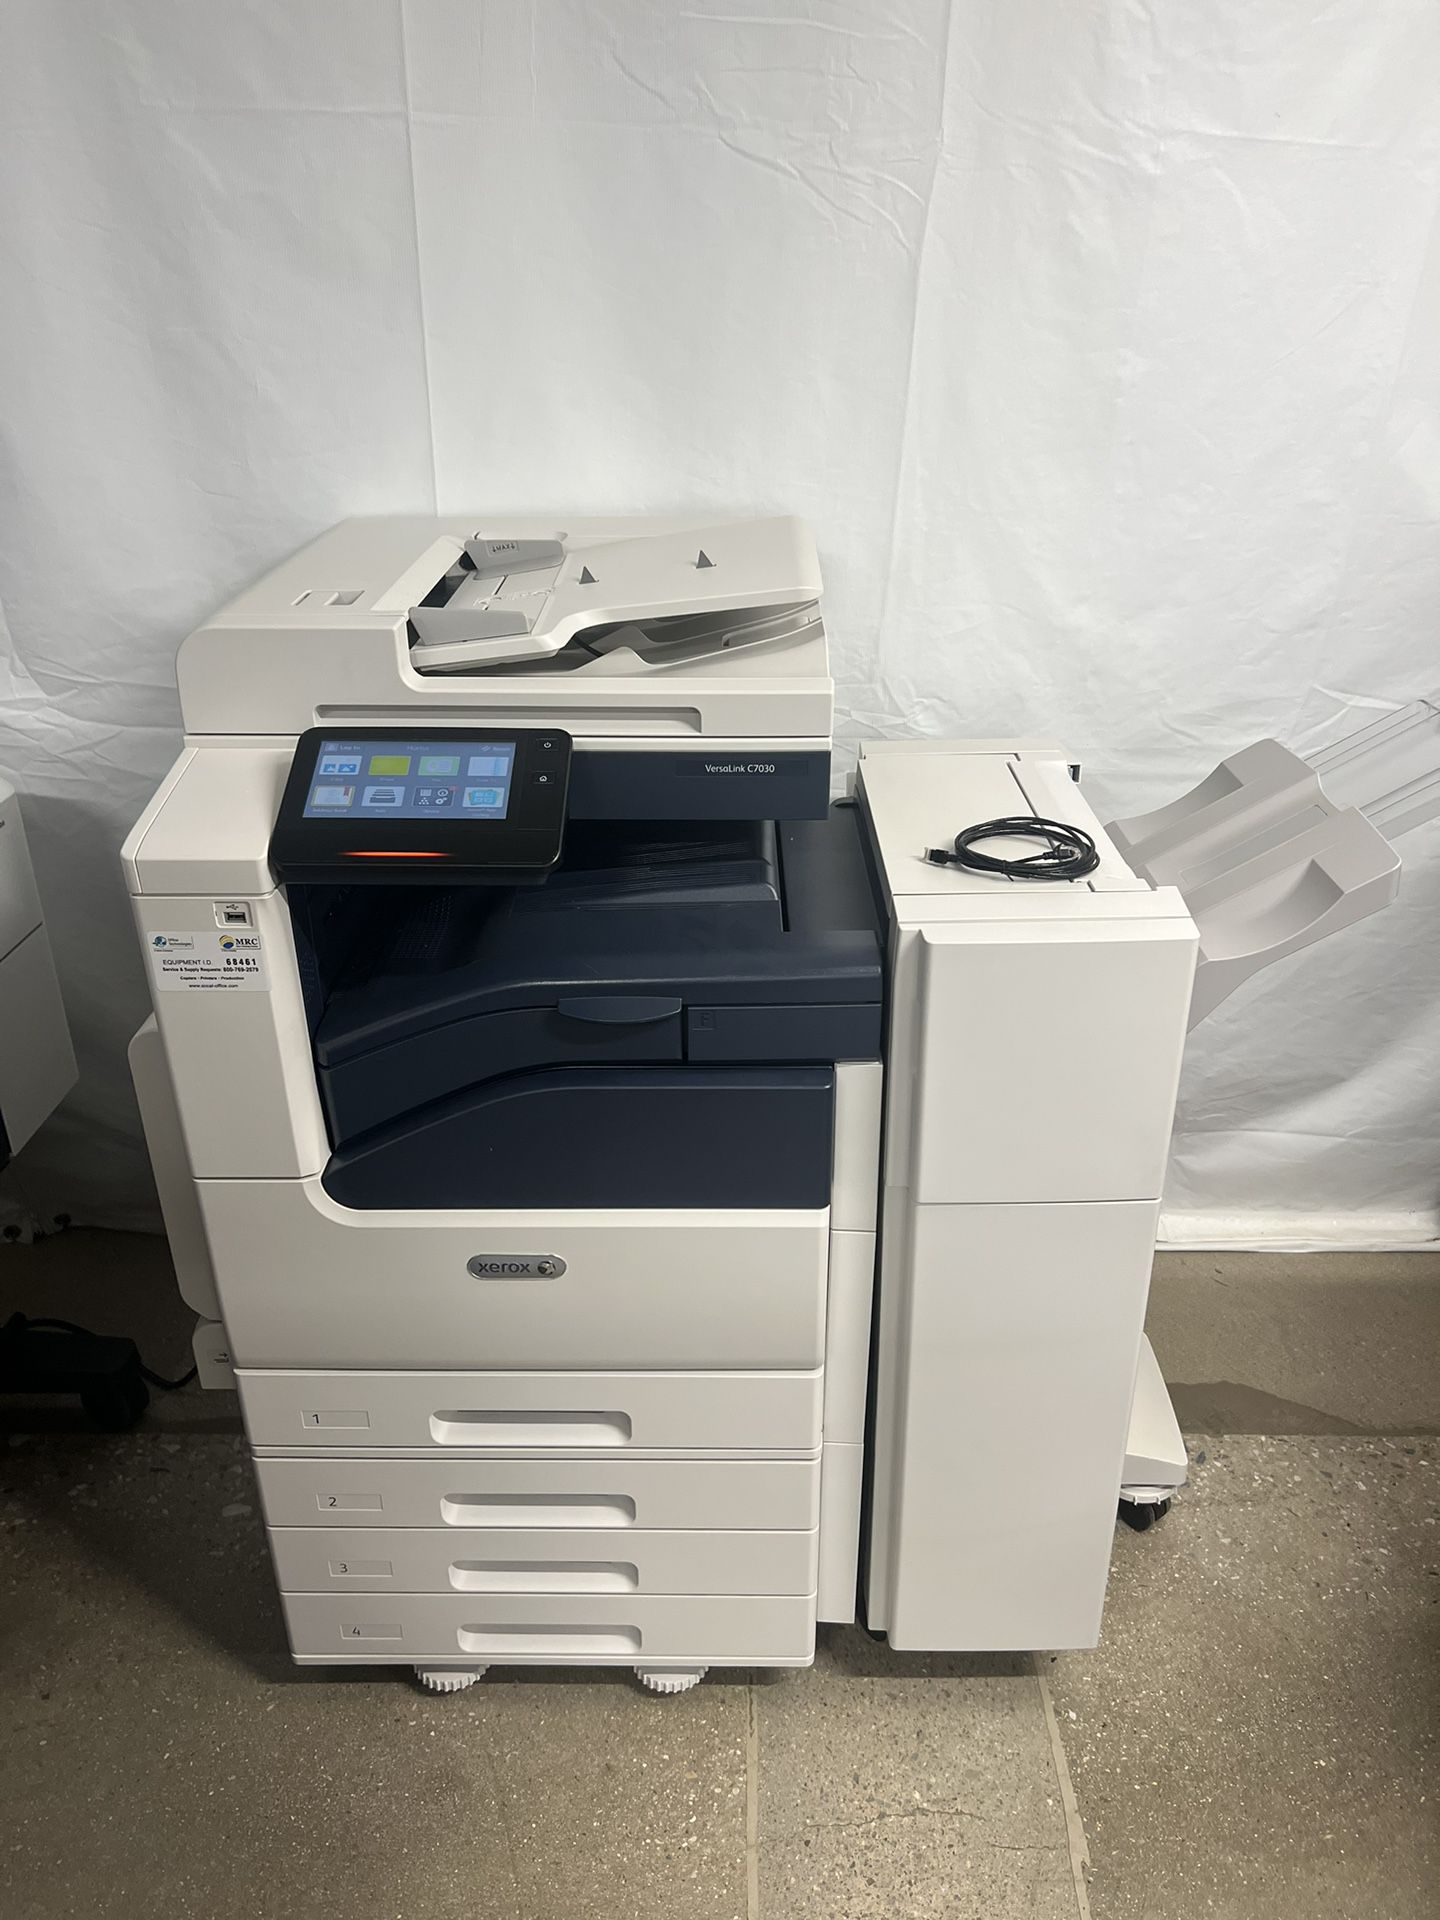 NEW - Xerox VersaLink Business Printer